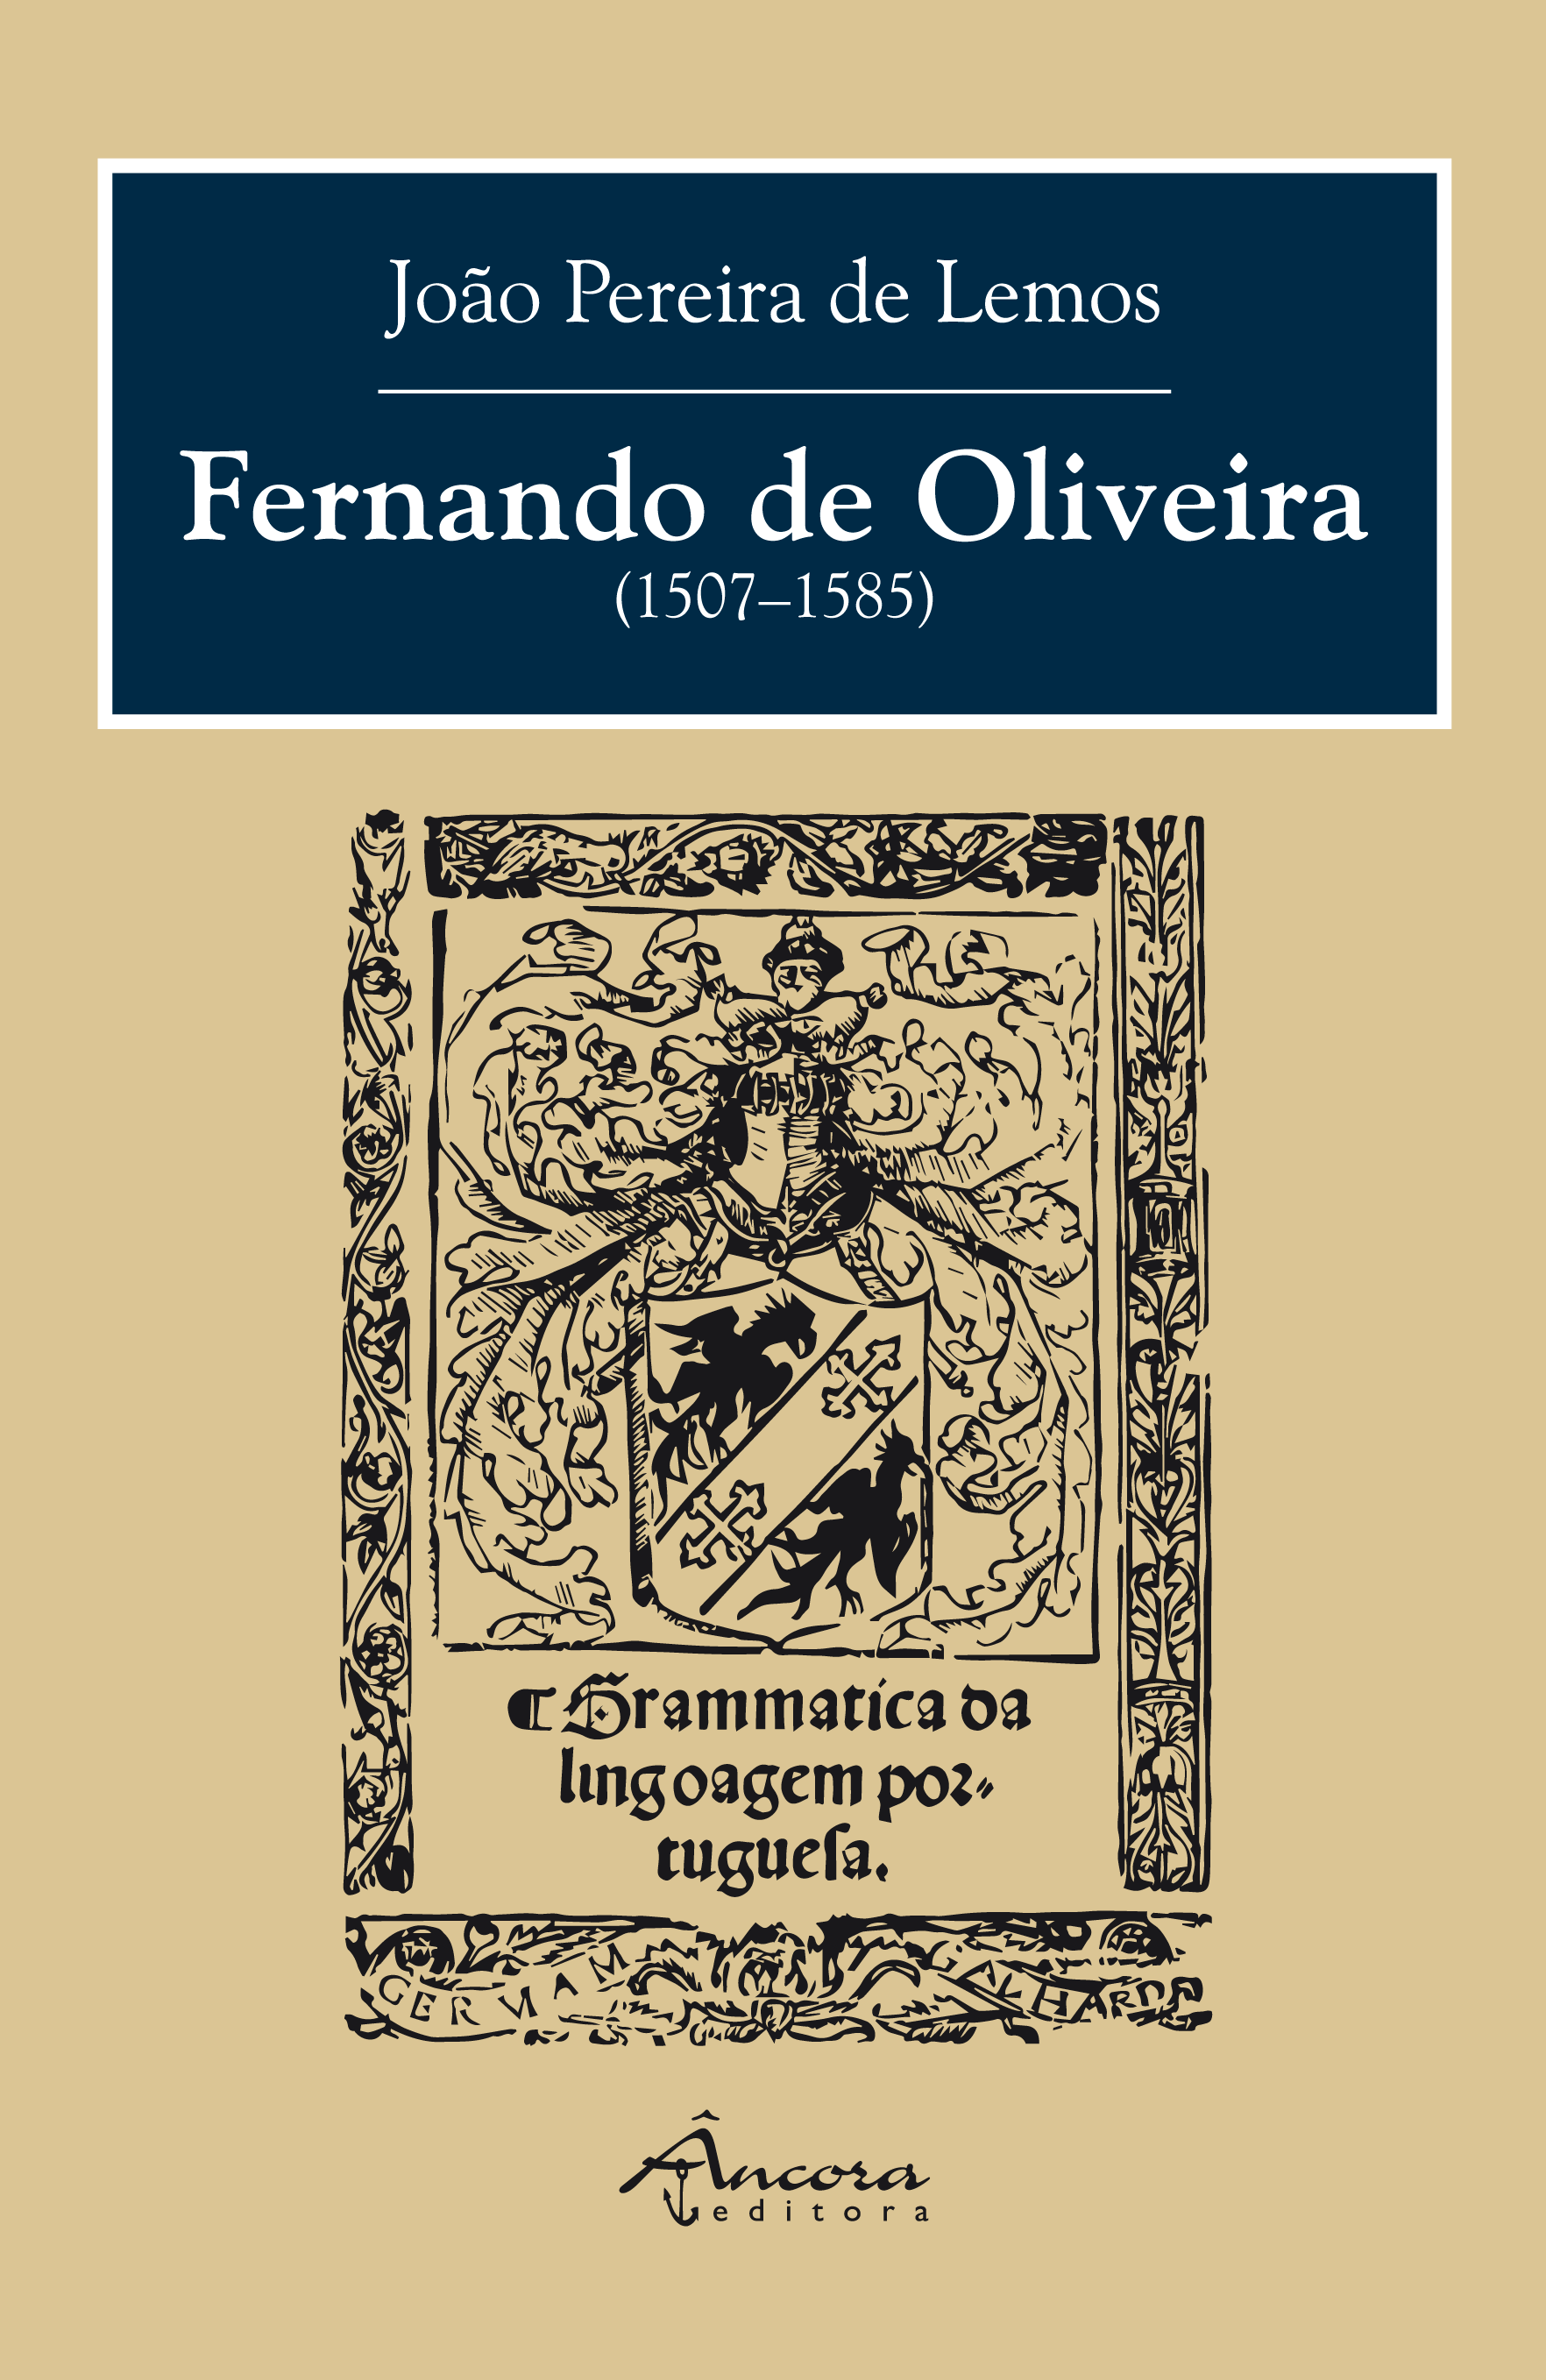 Fernando de Oliveira 1507-1585